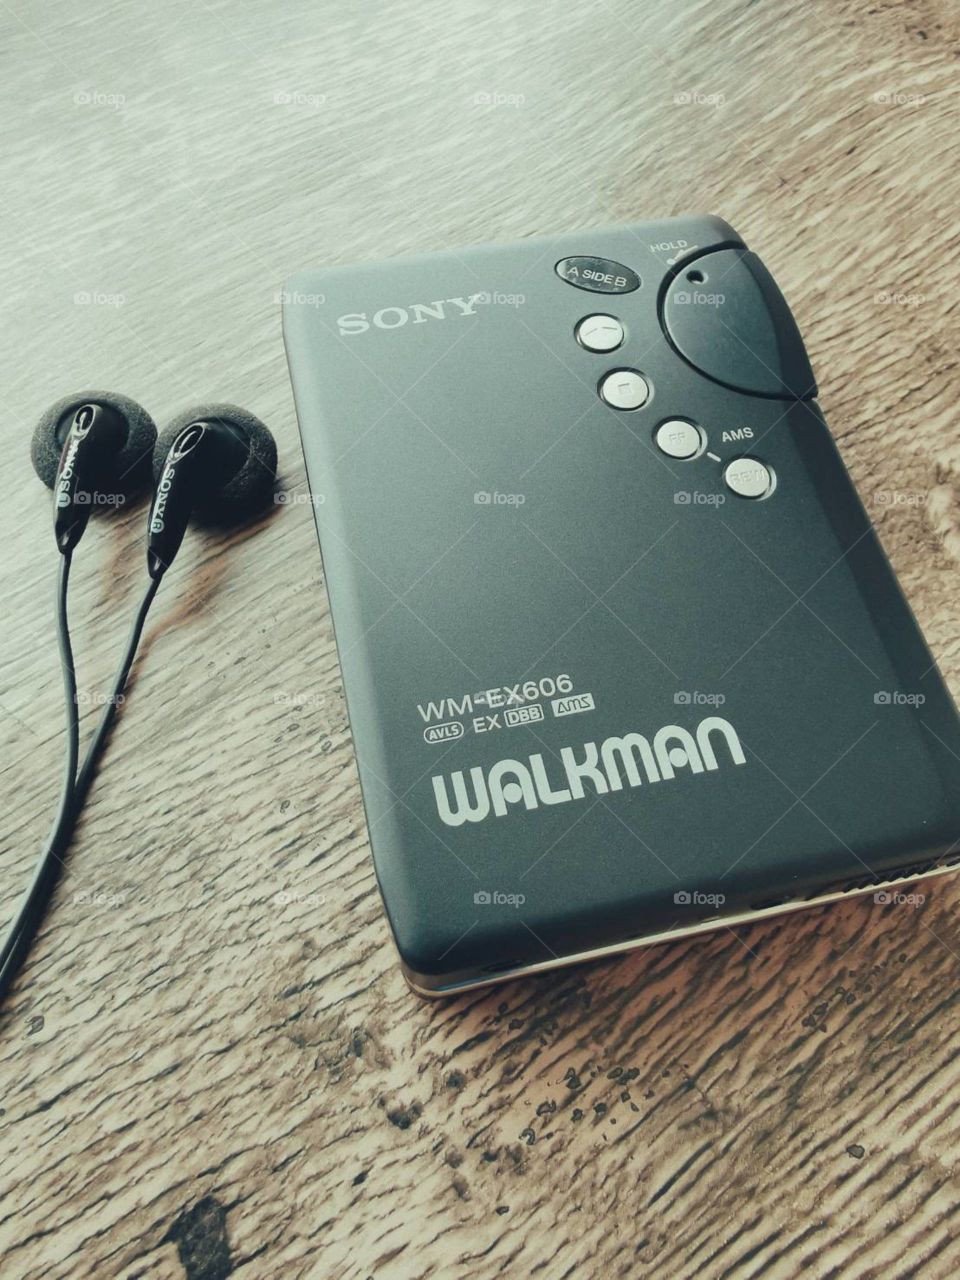 Sony Walkman cassette player